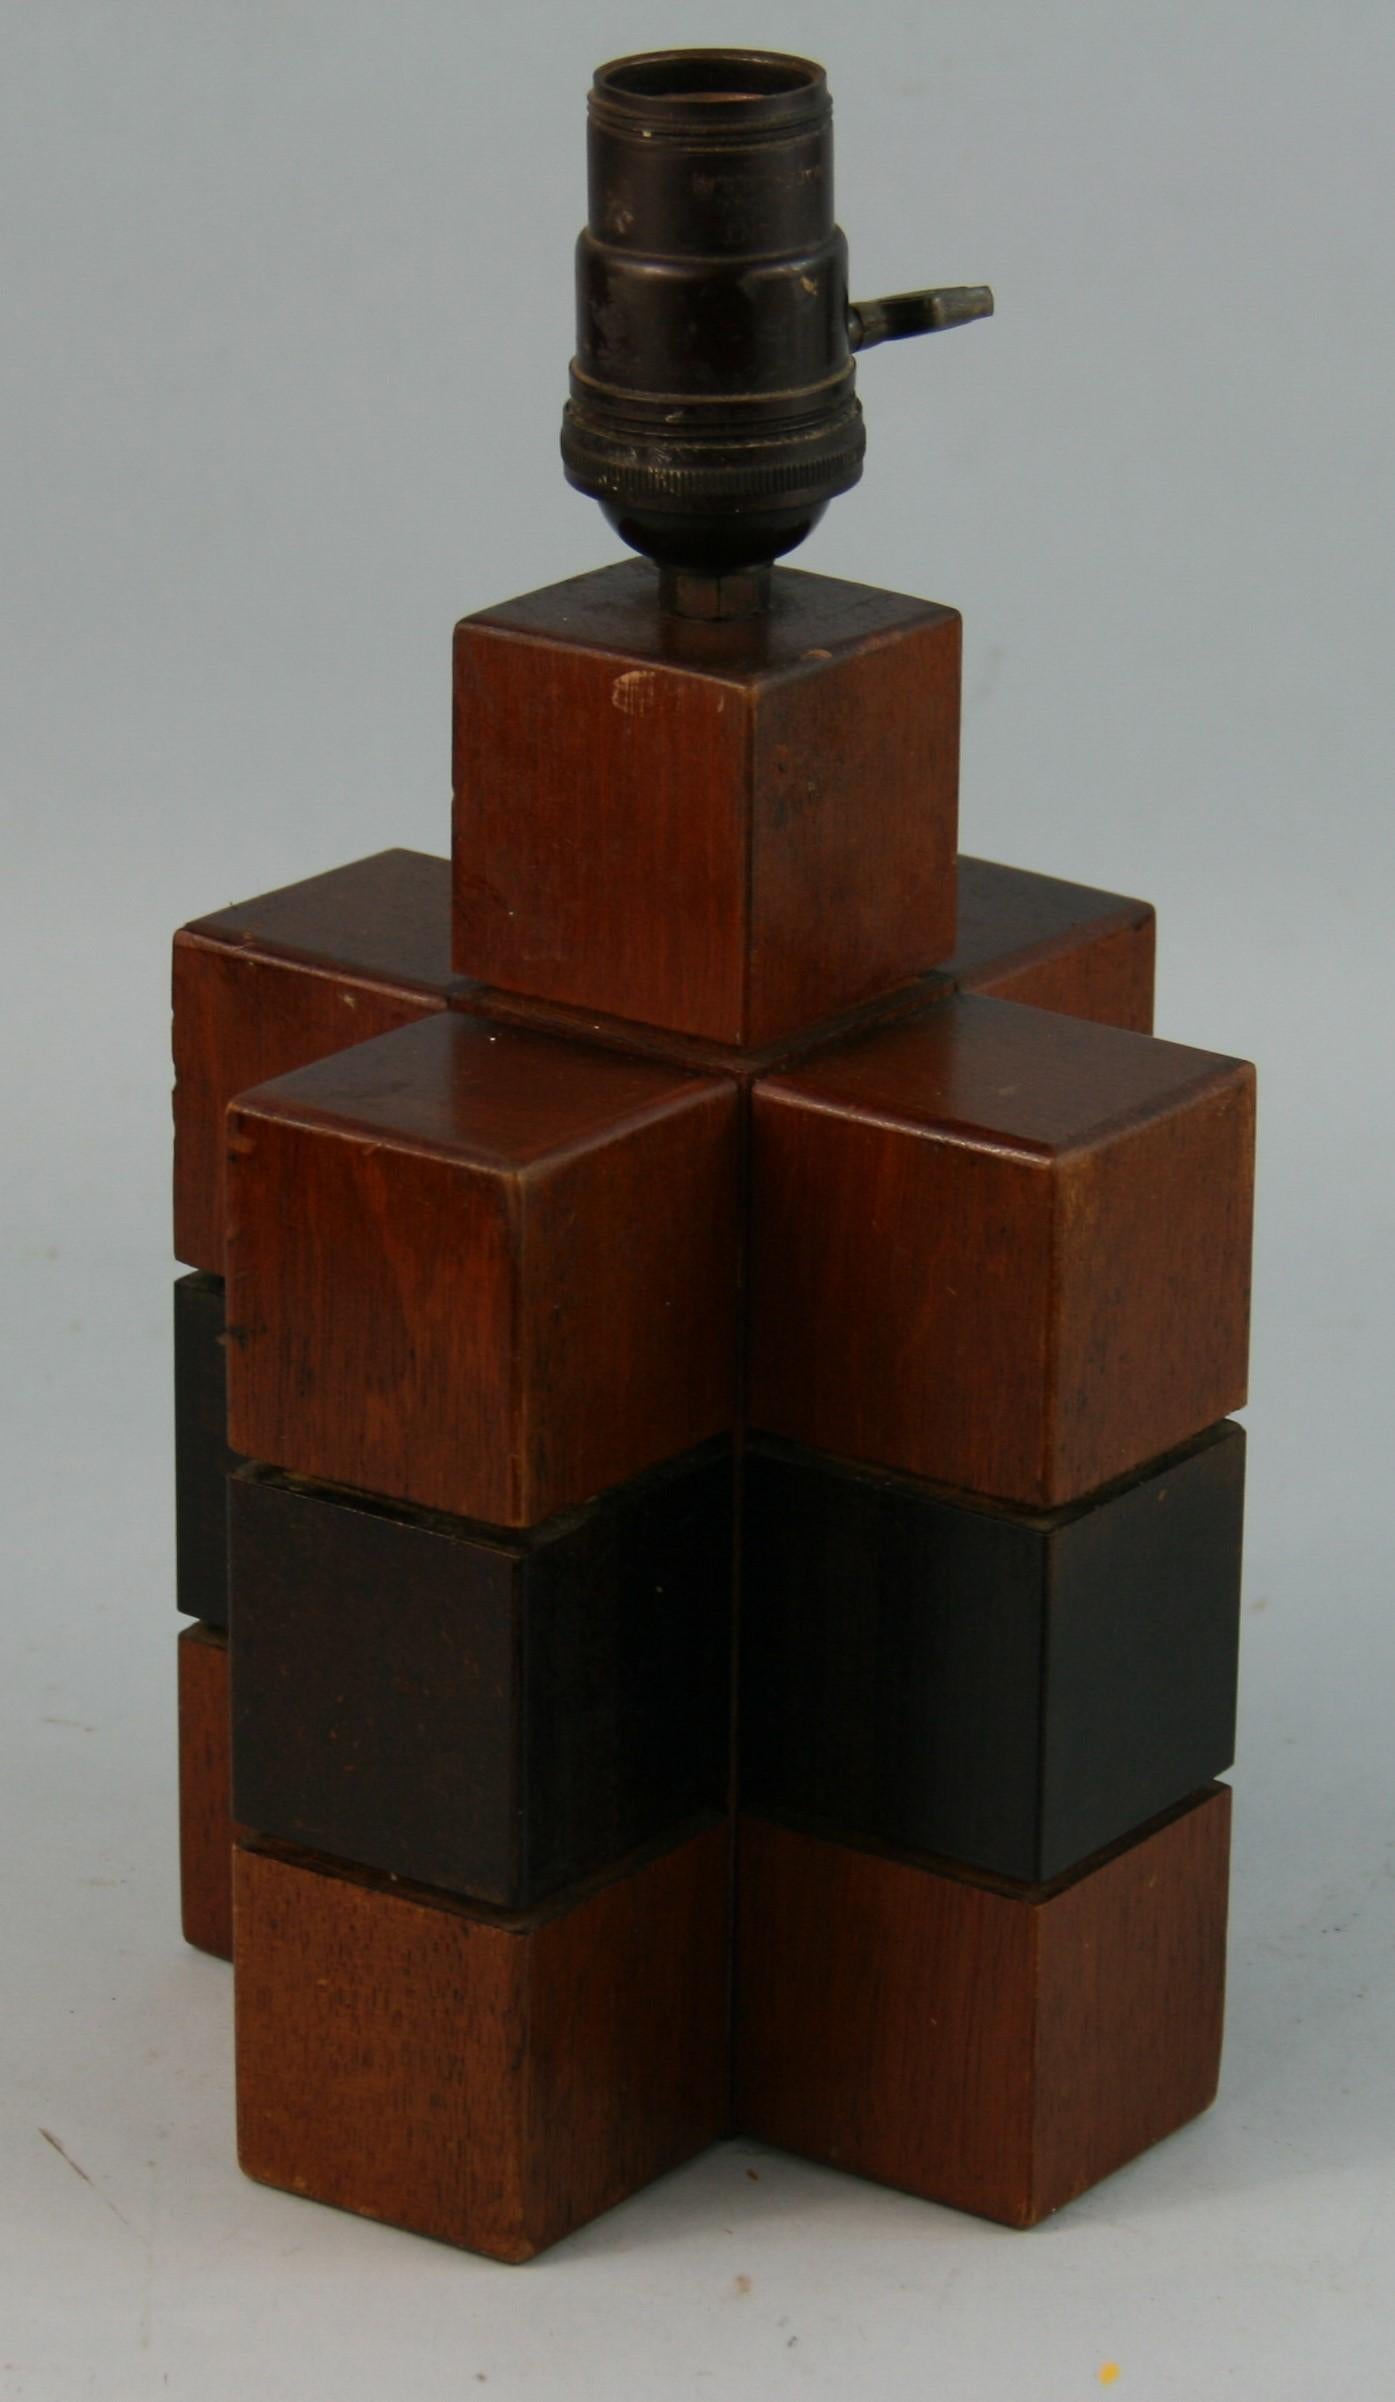 3-730 Lampe cubique en bois, fabriquée artisanalement.
Fabriqué en Suède dans les années 1950
 